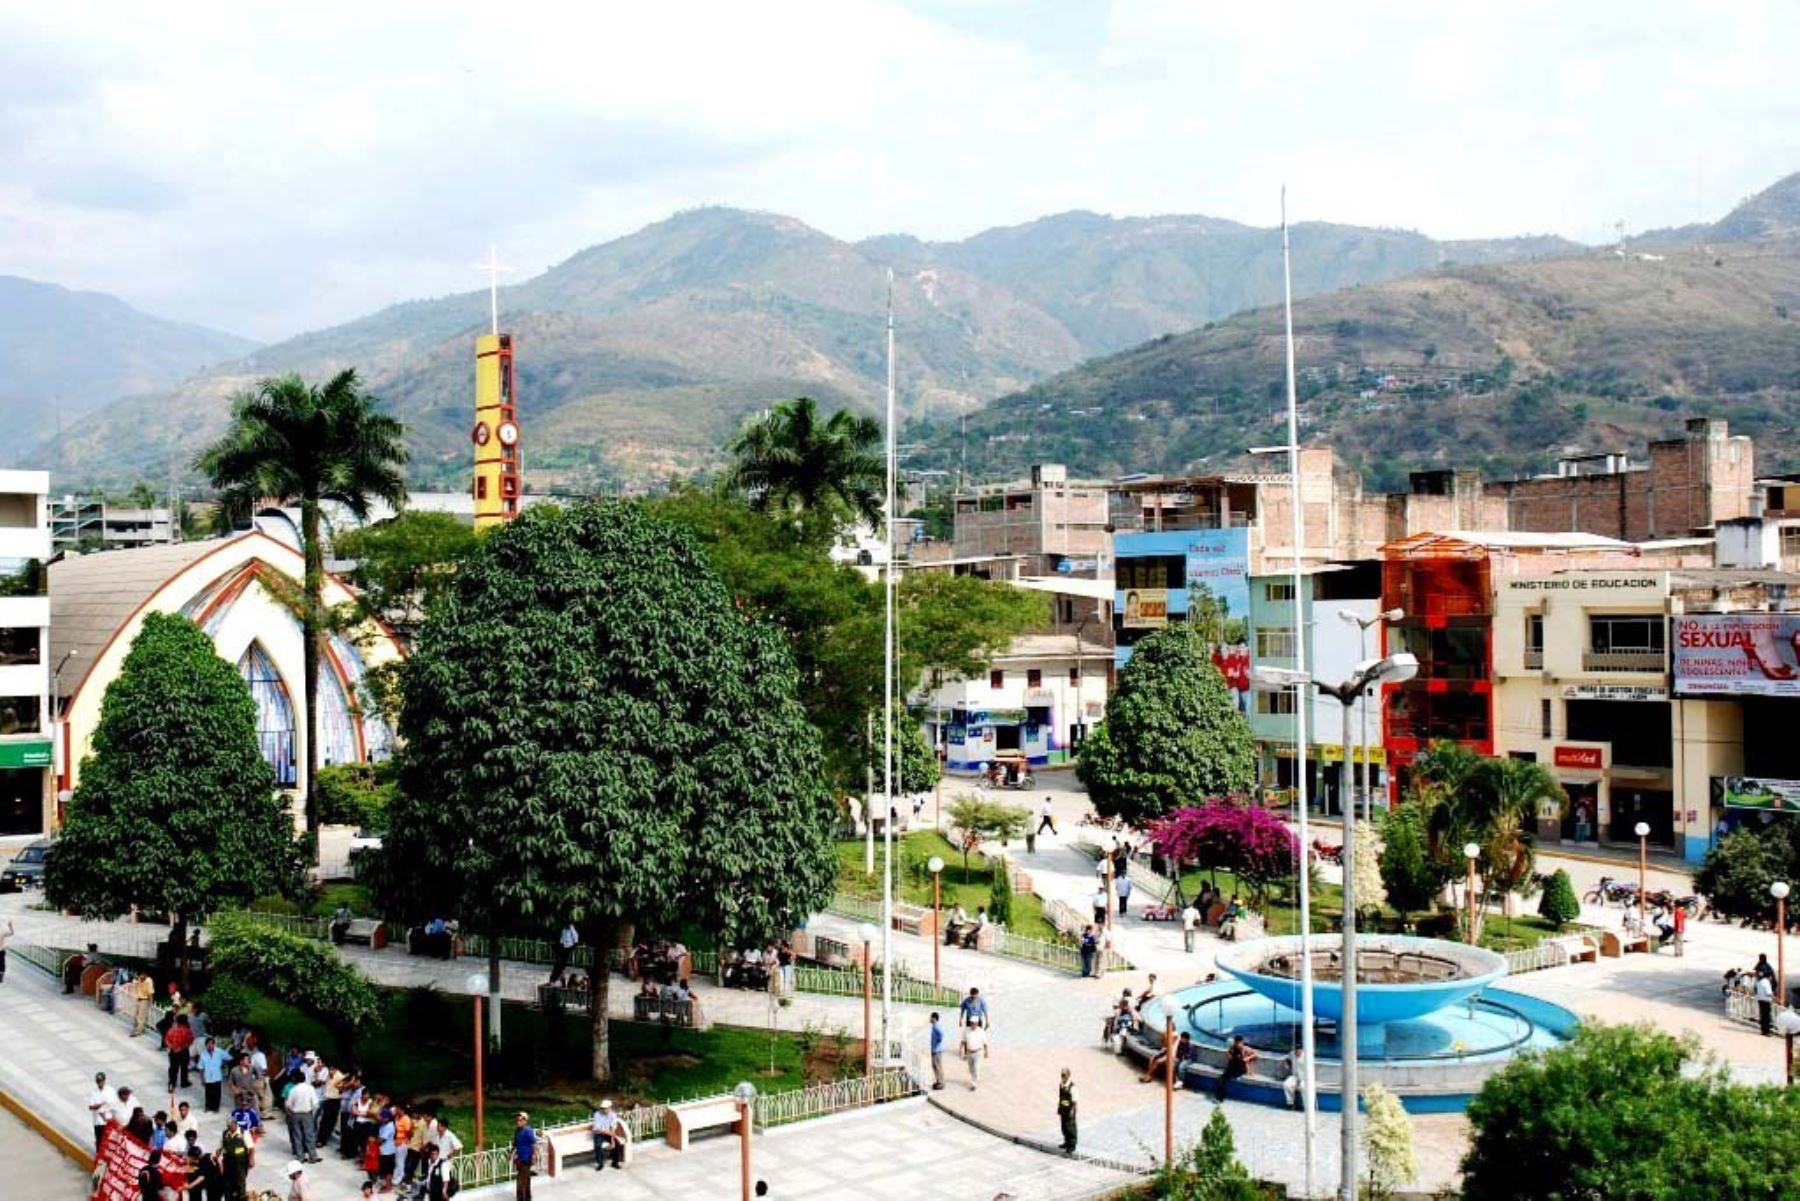 La provincia de Jaén, región Cajamarca, inició una colecta para comprar una planta de oxígeno para los pacientes covid-19. Foto: ANDINA/Difusión